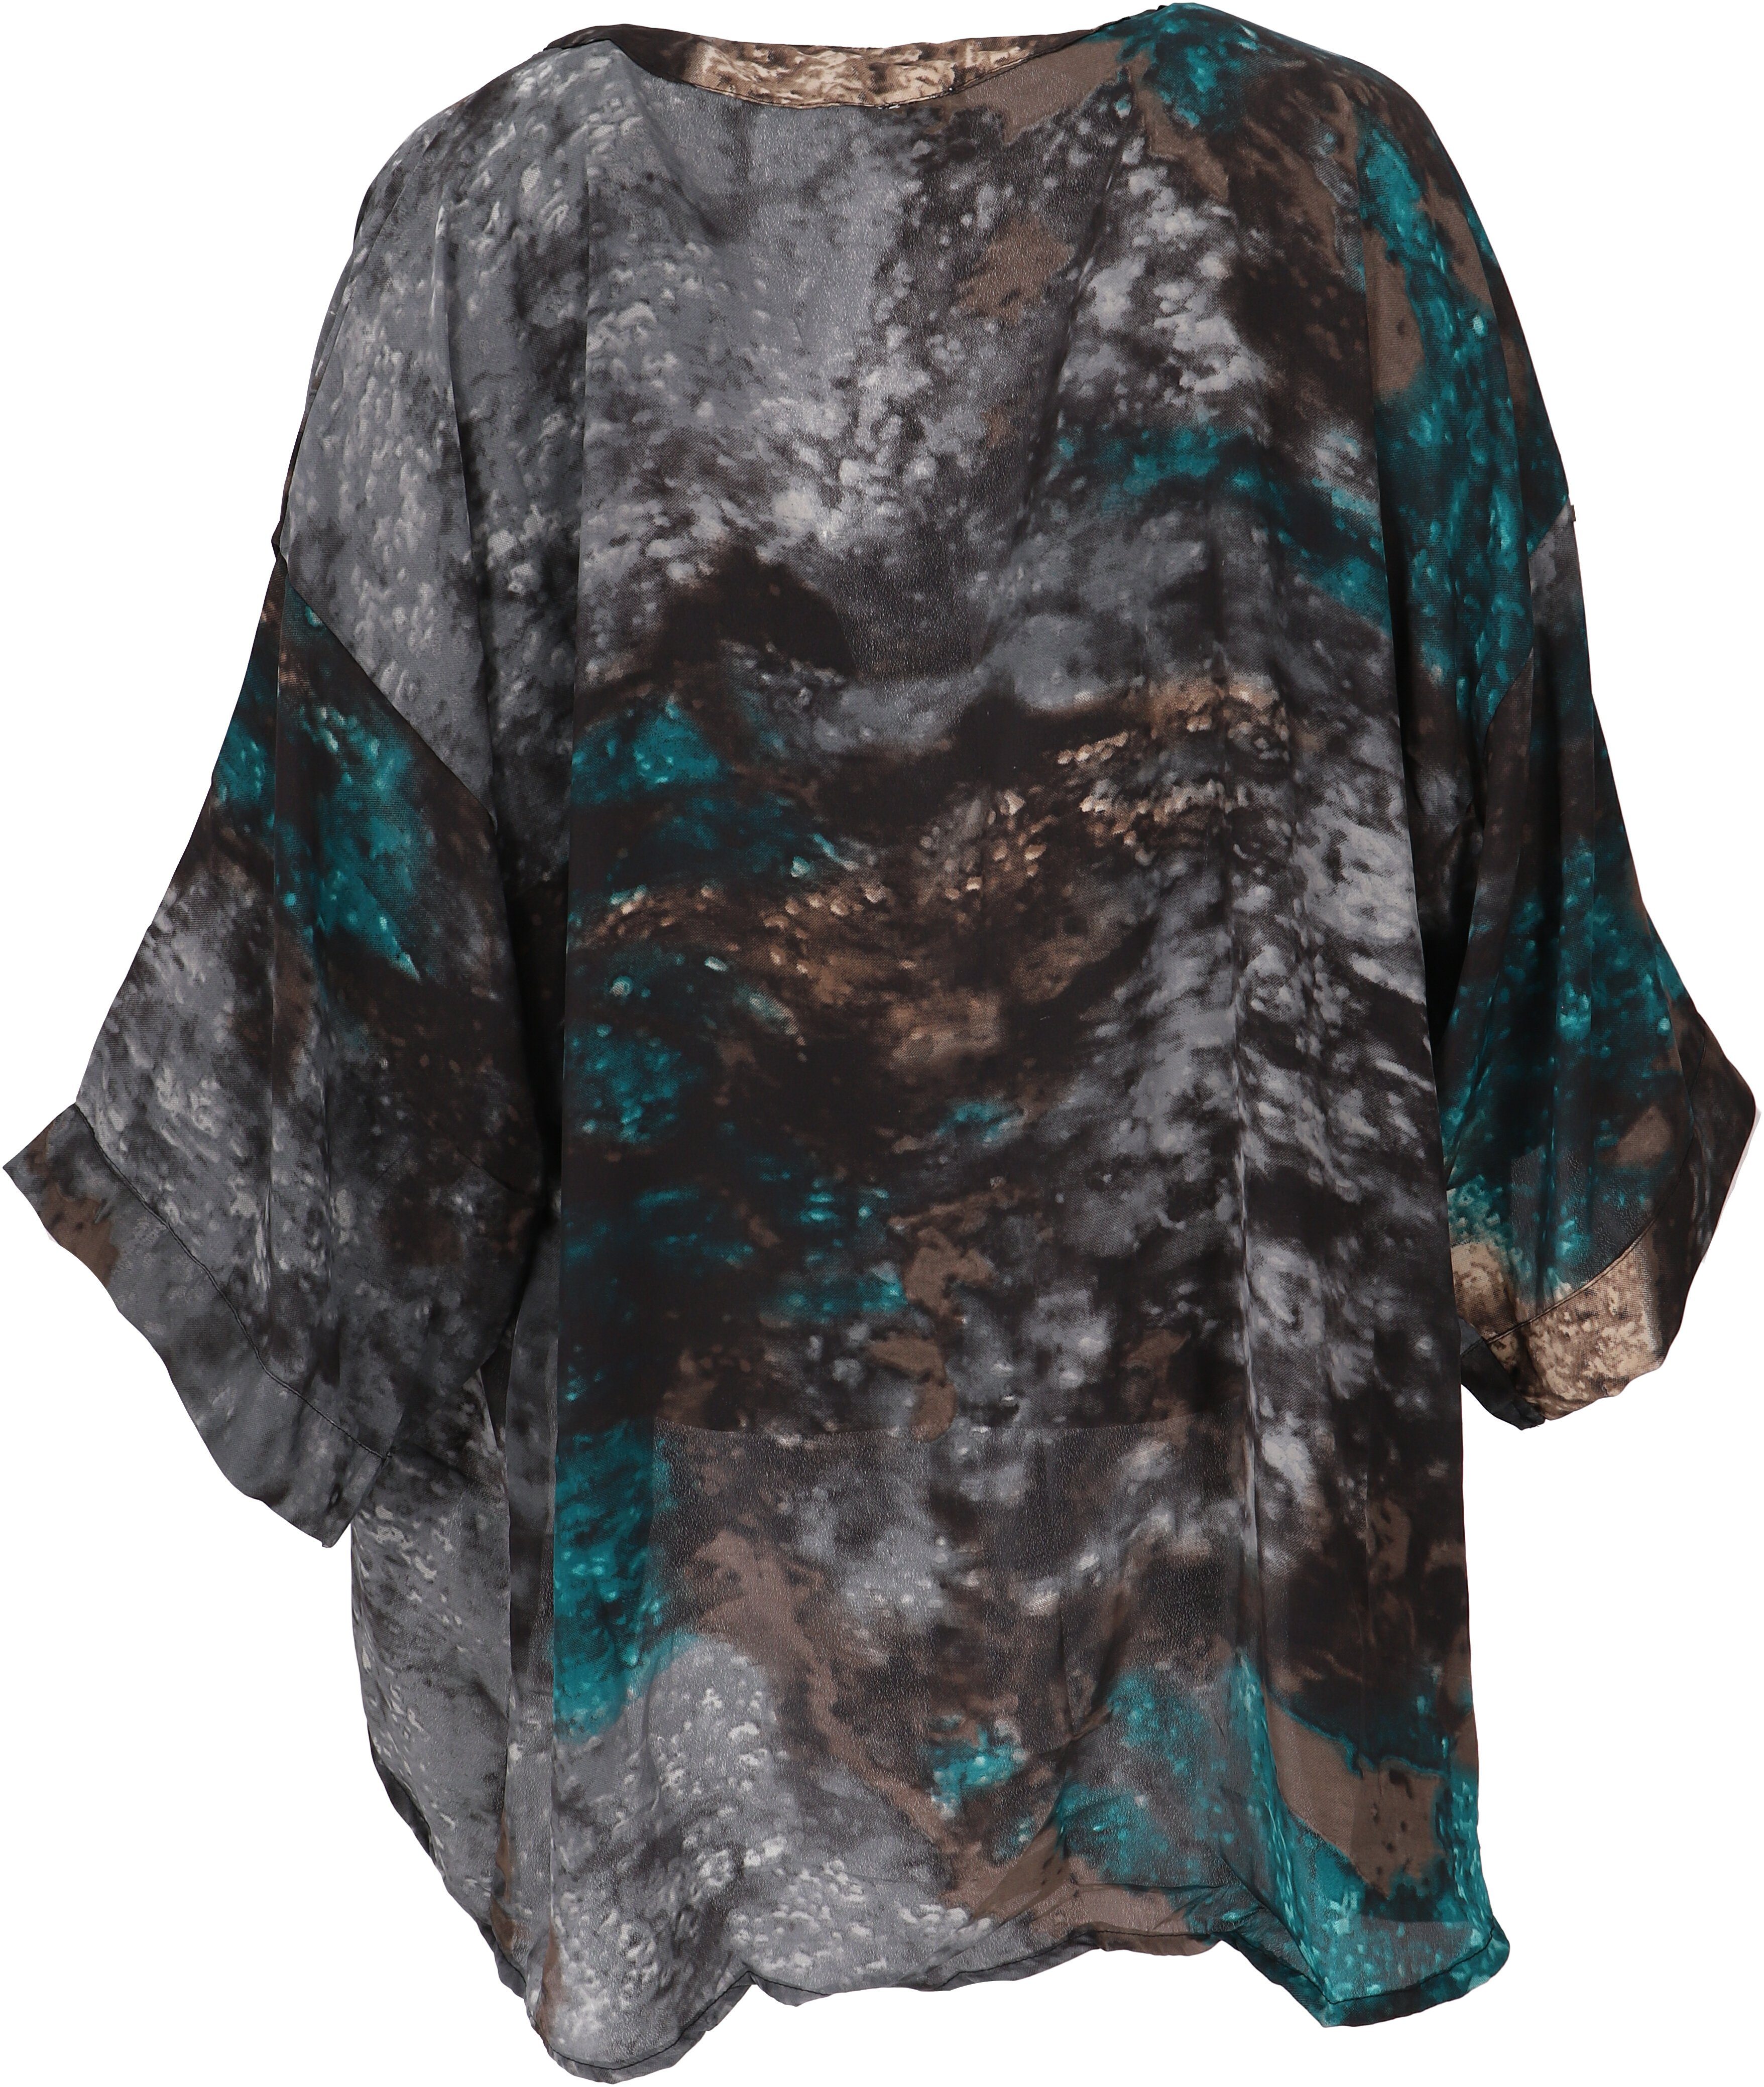 Guru-Shop Kimono Kurzer Kimono, Boho offener Kimono -.., Kimono, Bekleidung blau/schwarz alternative